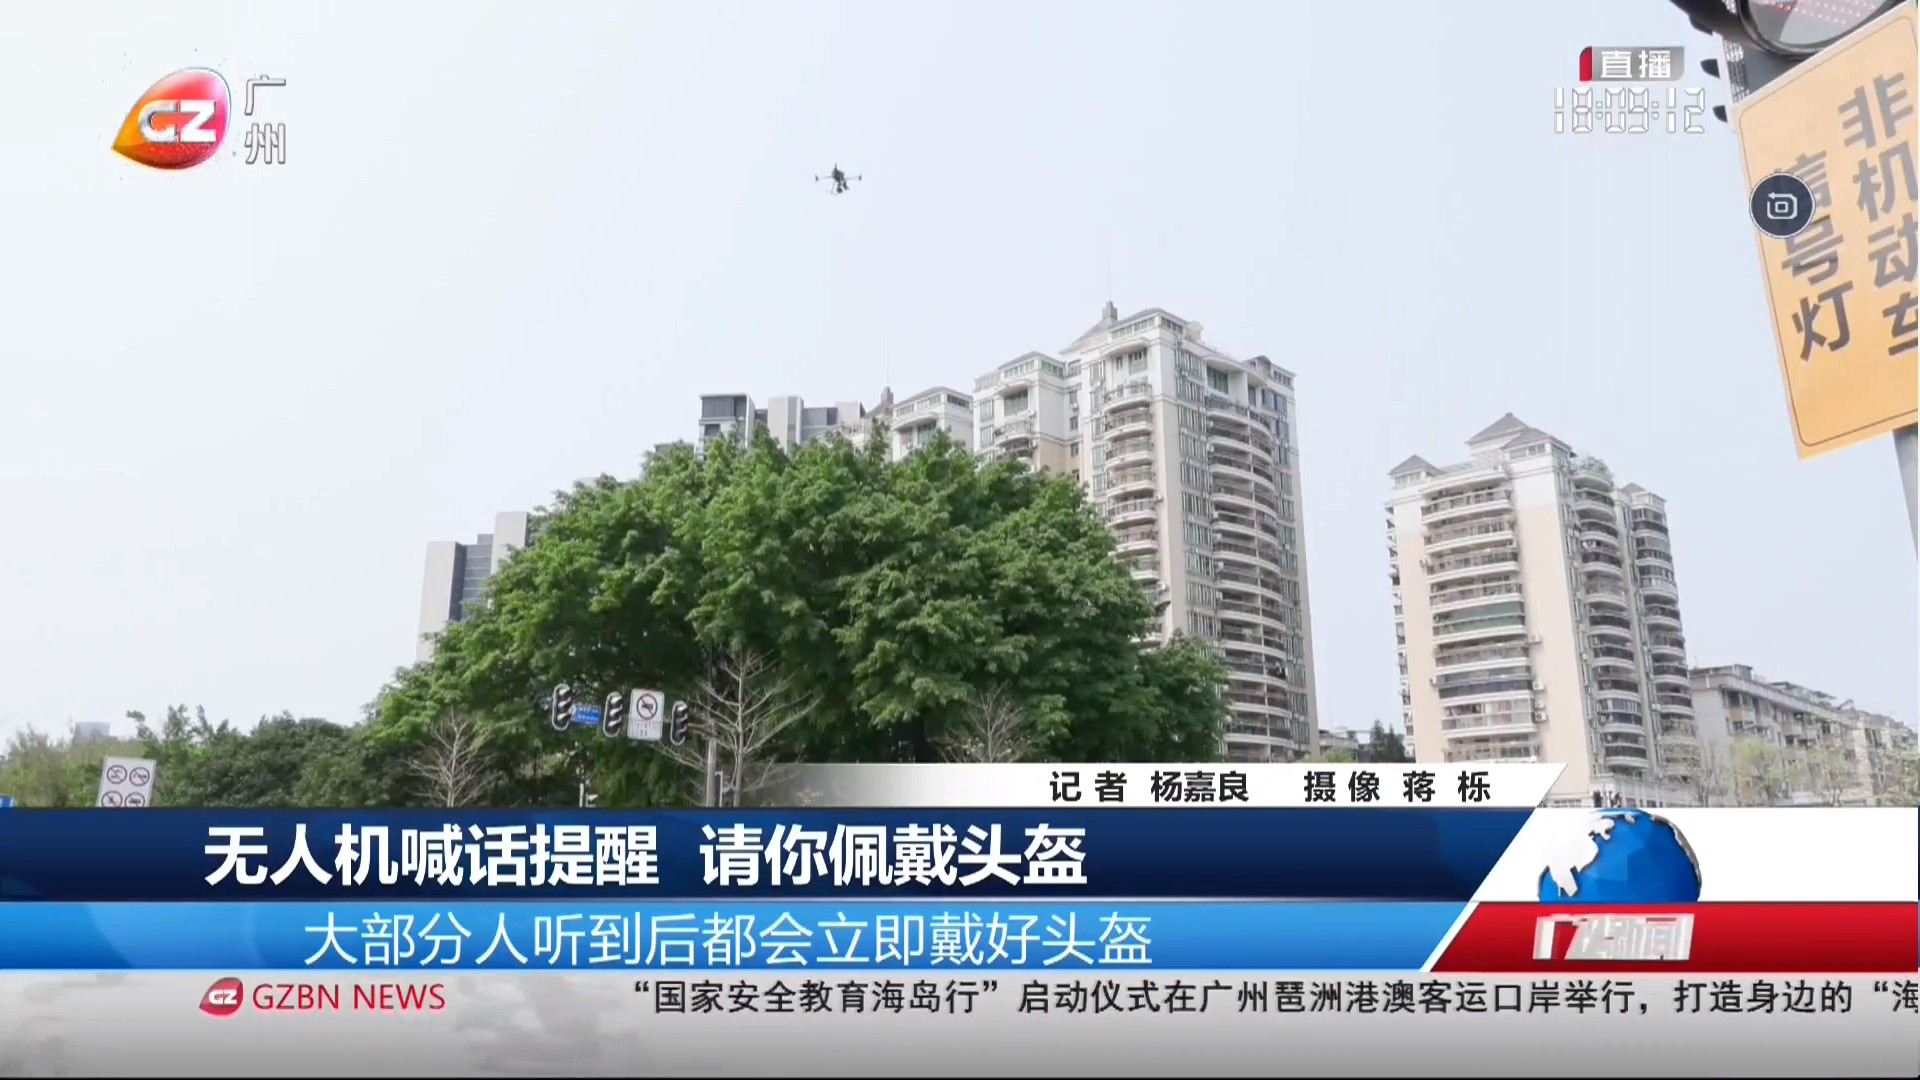 广州台综合频道 广视新闻 无人机喊话提醒 请你佩戴头盔